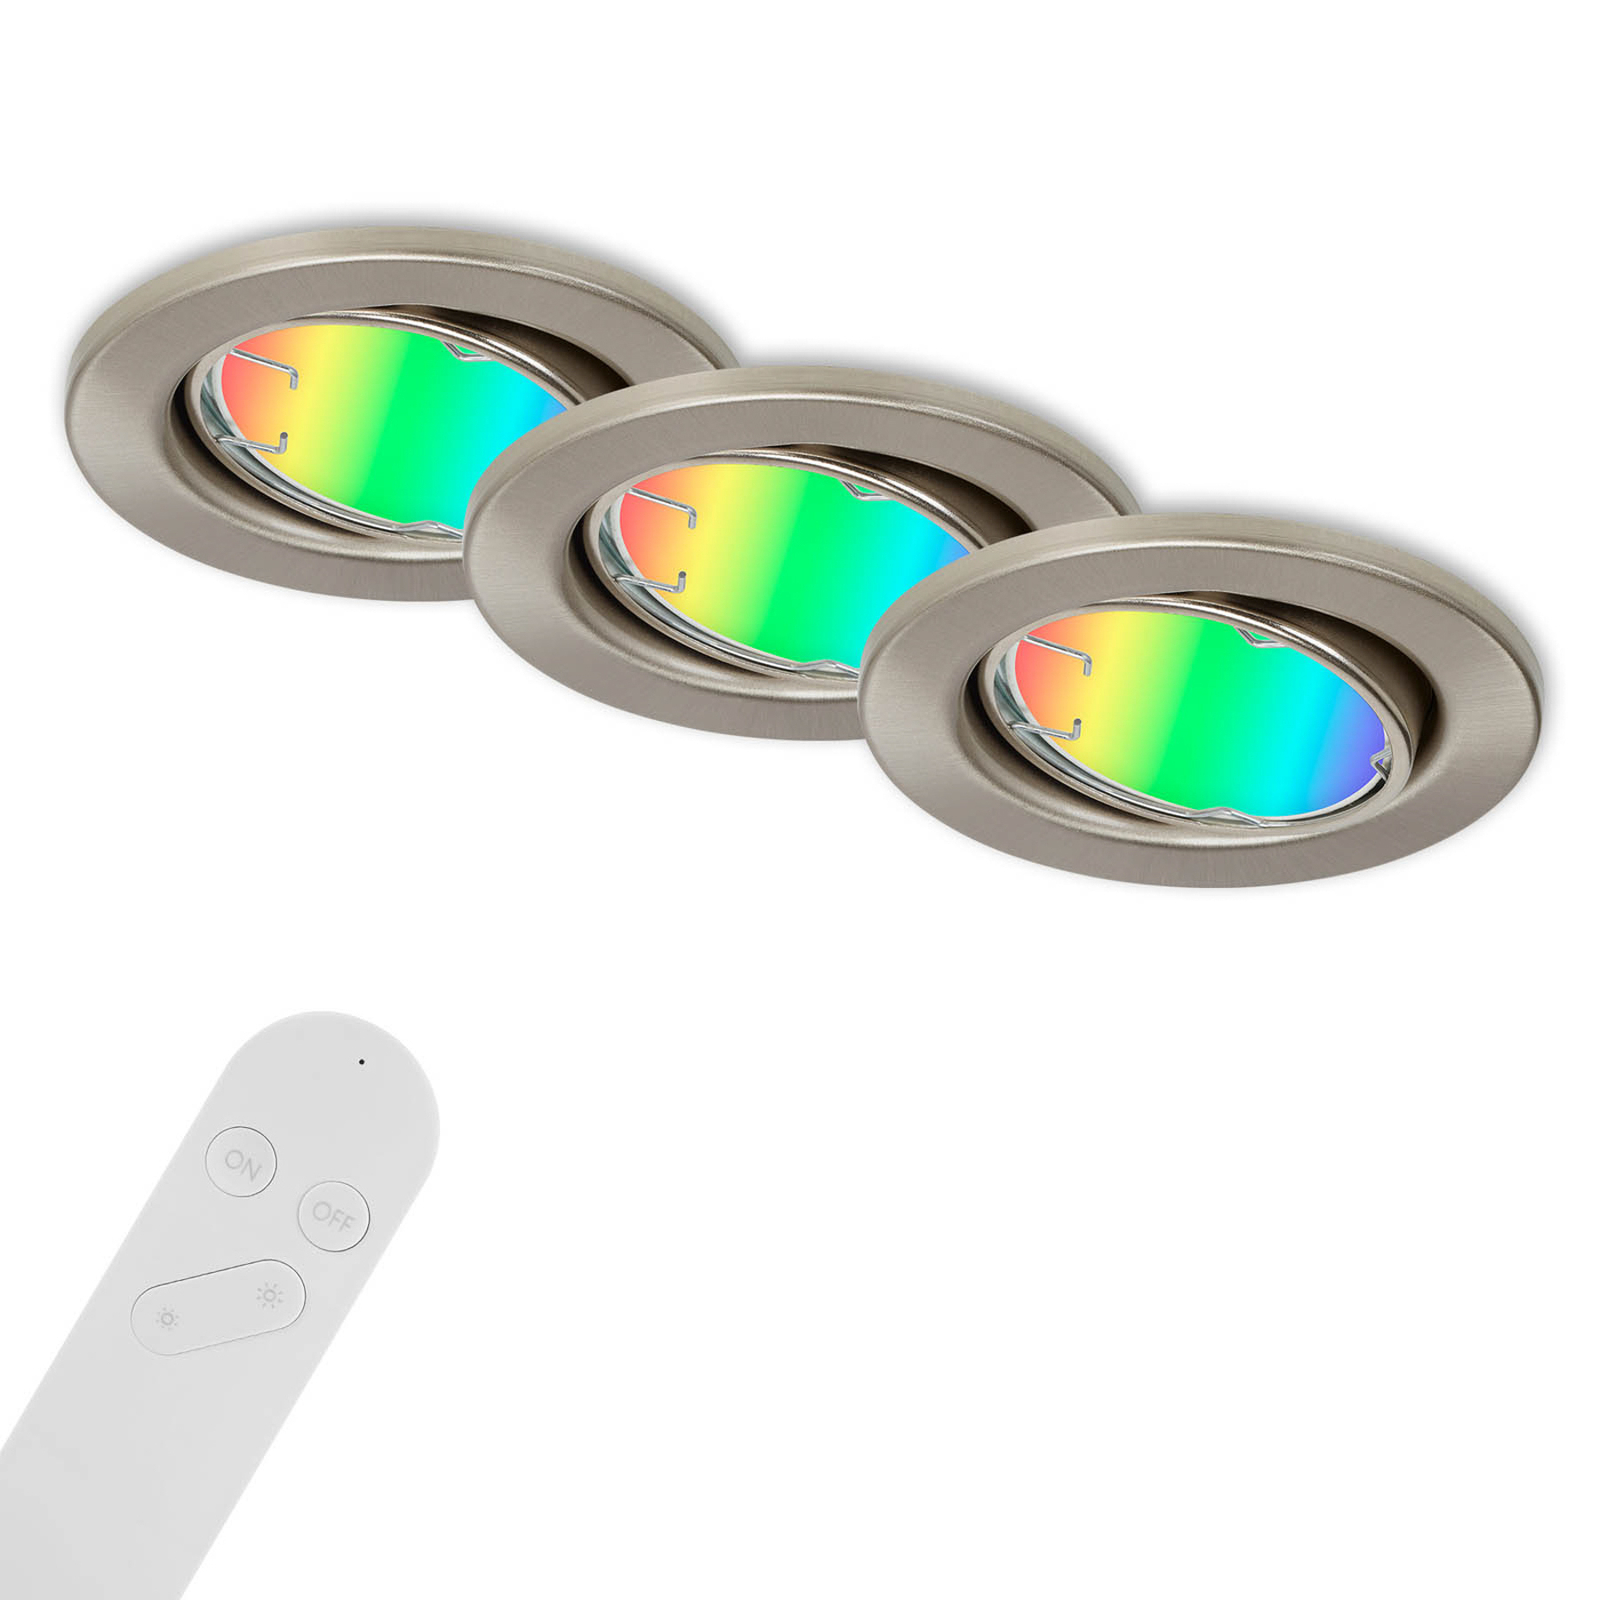 LED-es süllyesztett lámpa Fit Move S, CCT RGB 3gang, nikkel